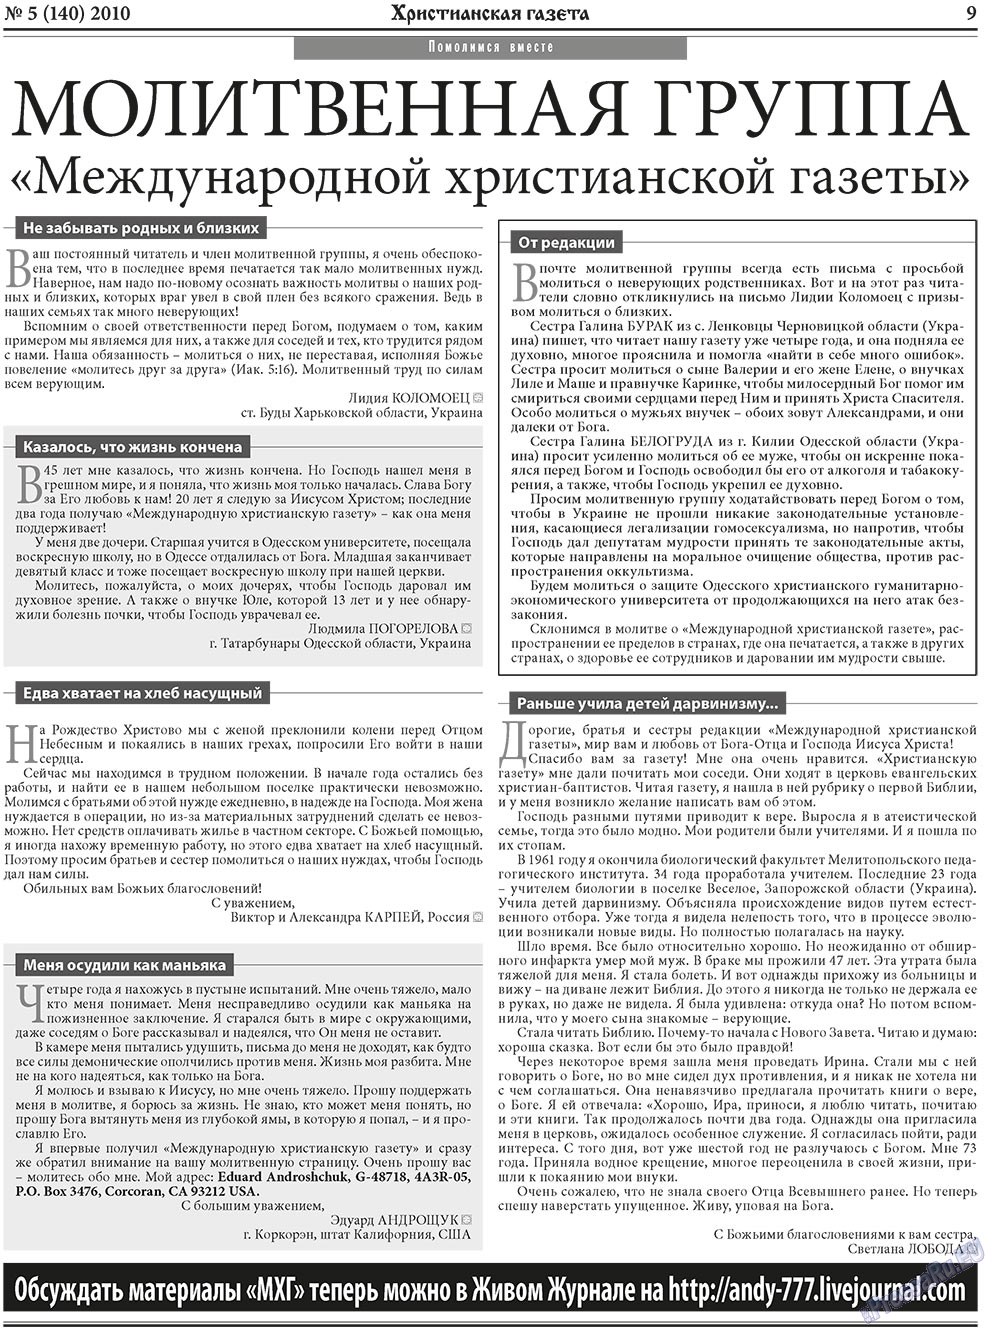 Христианская газета, газета. 2010 №5 стр.9